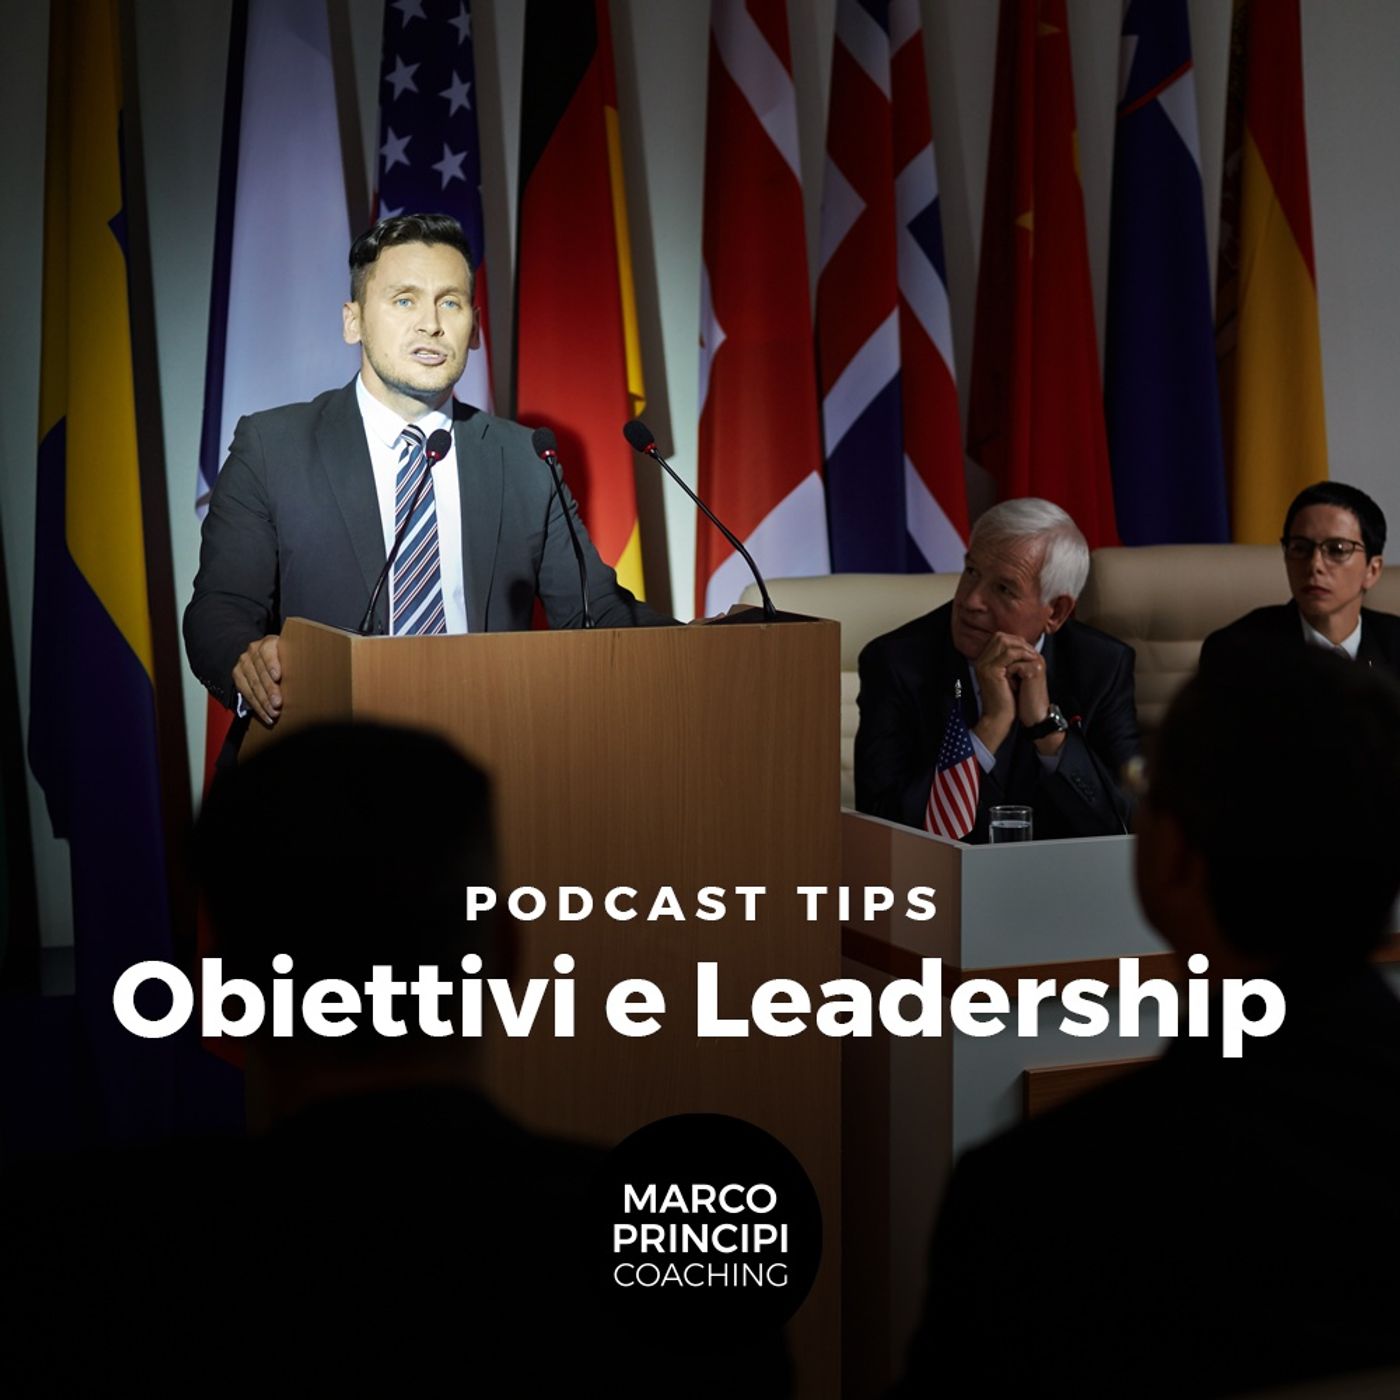 Podcast Tips "Obiettivi e leadership"